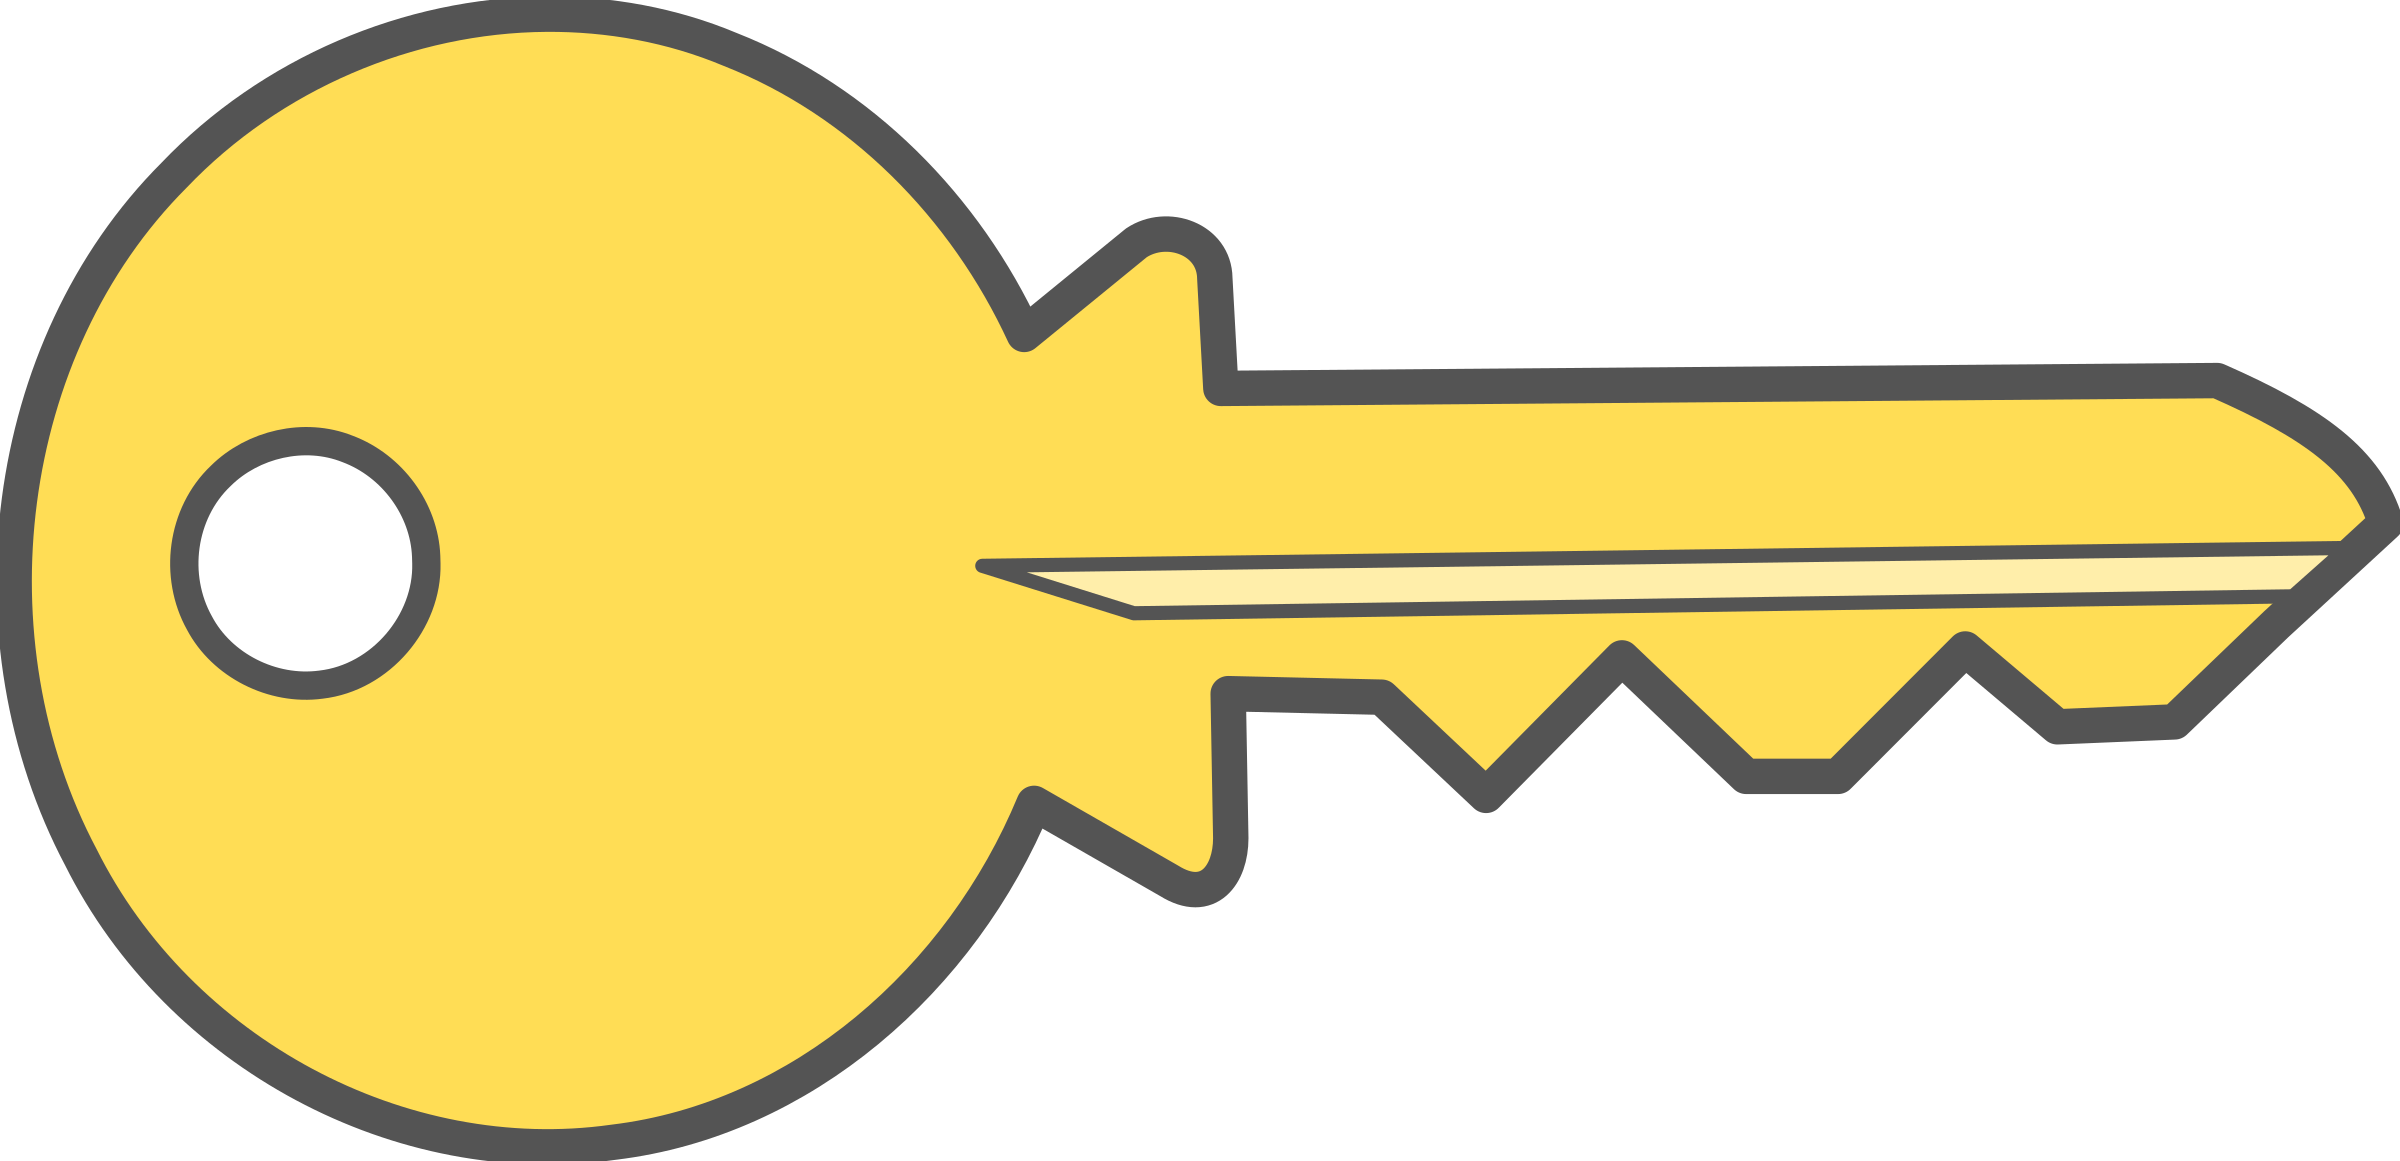 keys clipart medieval